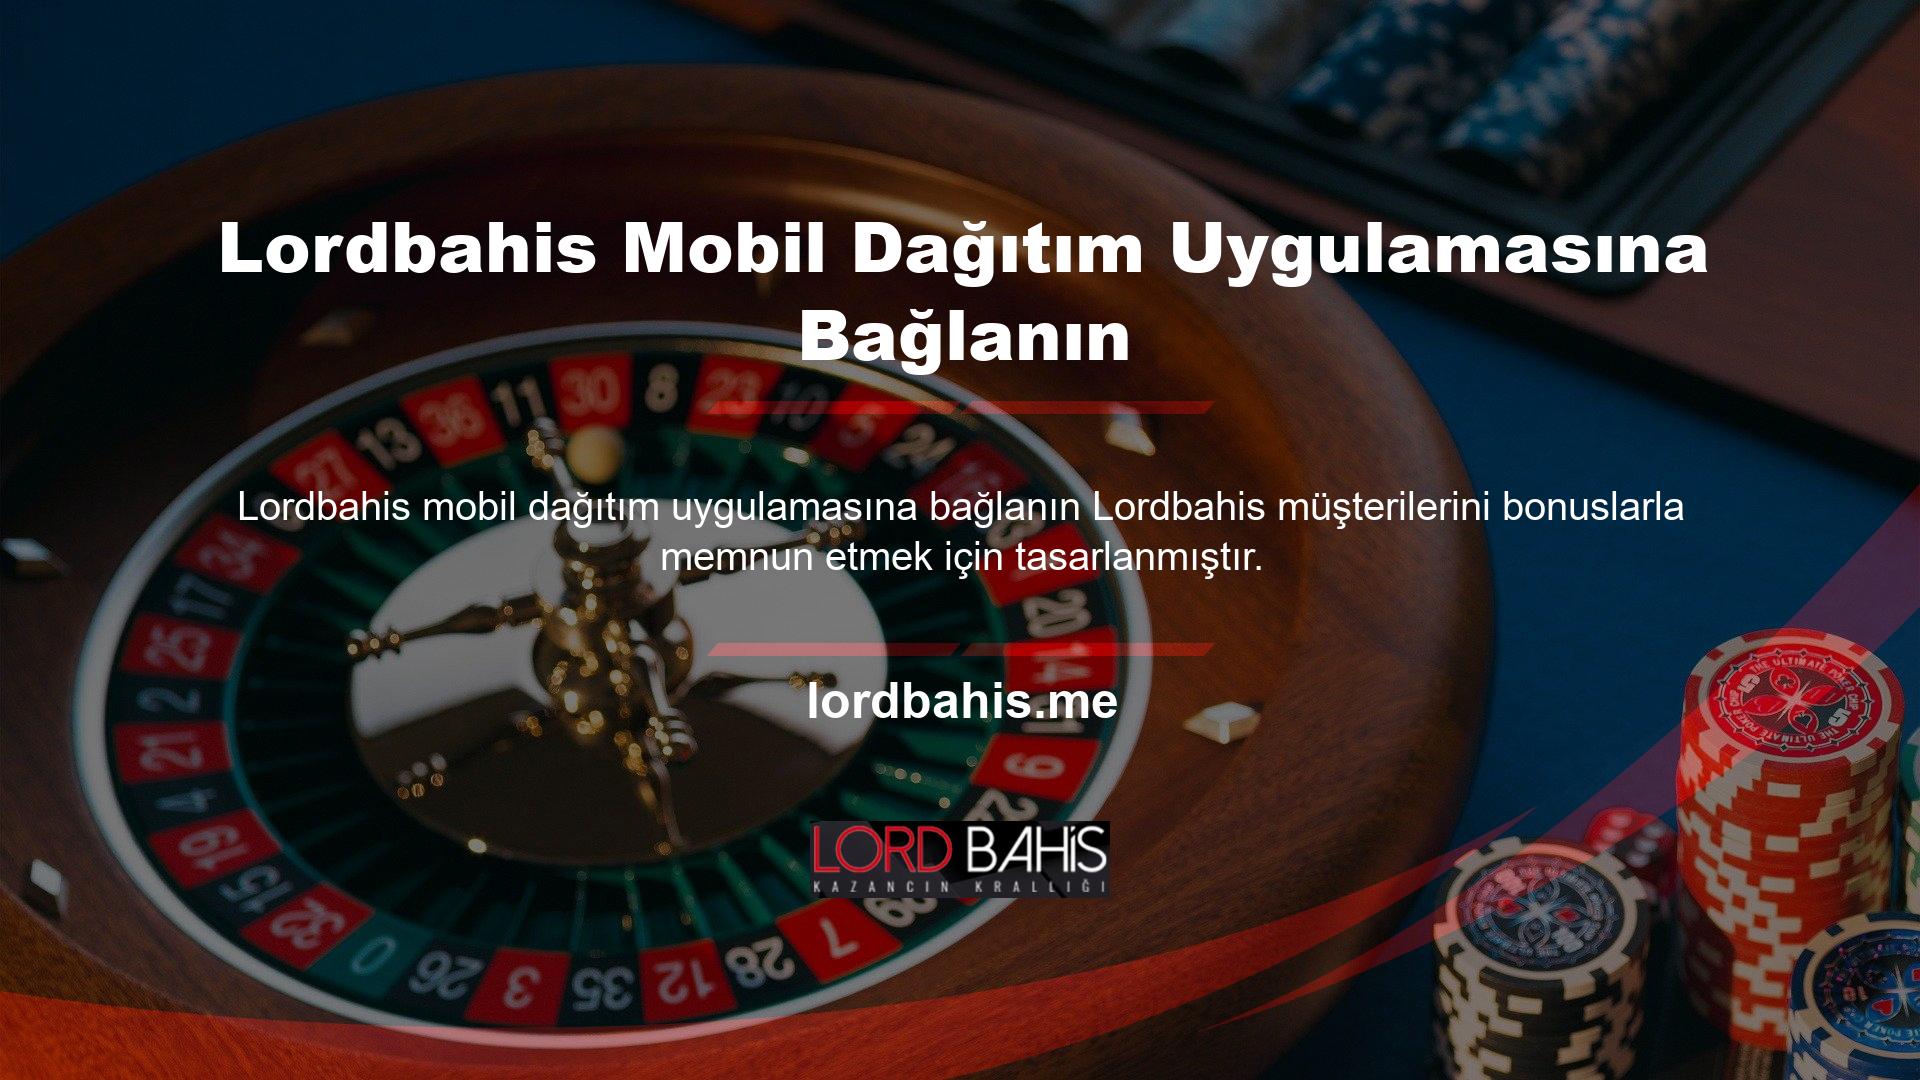 Aslında tüm Türk bahisçilerin ve casino oyuncularının talep ettiği standartları karşılayabiliyoruz